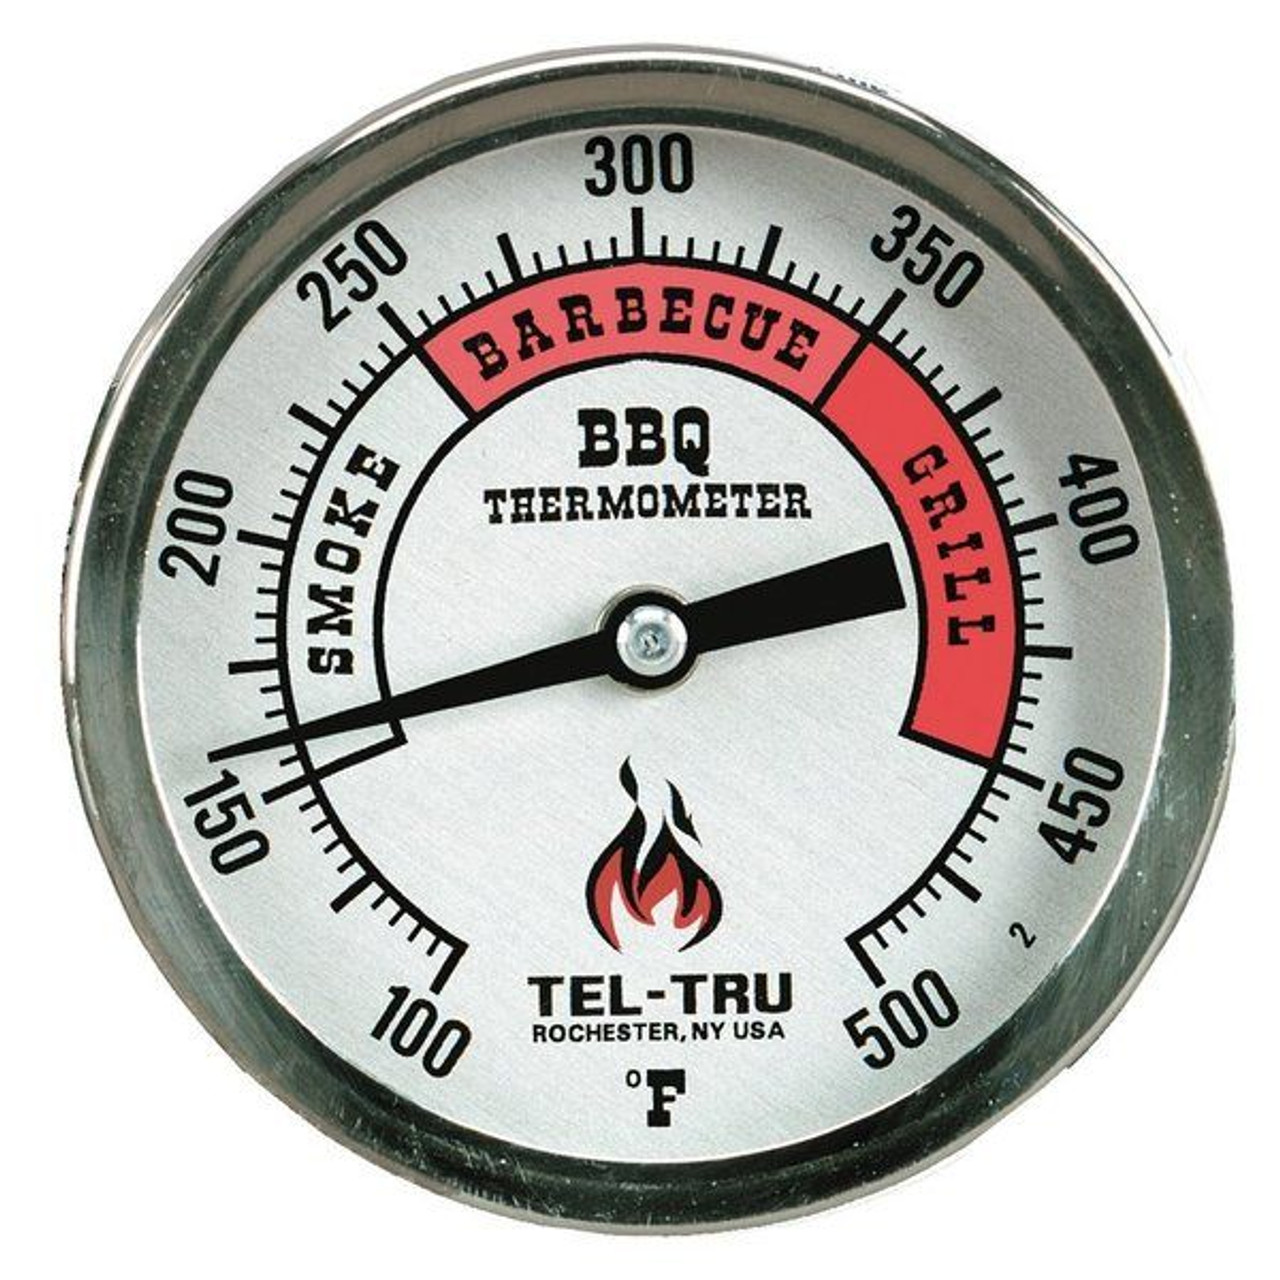 Pk Grills BBQ Thermometer by Tel-Tru